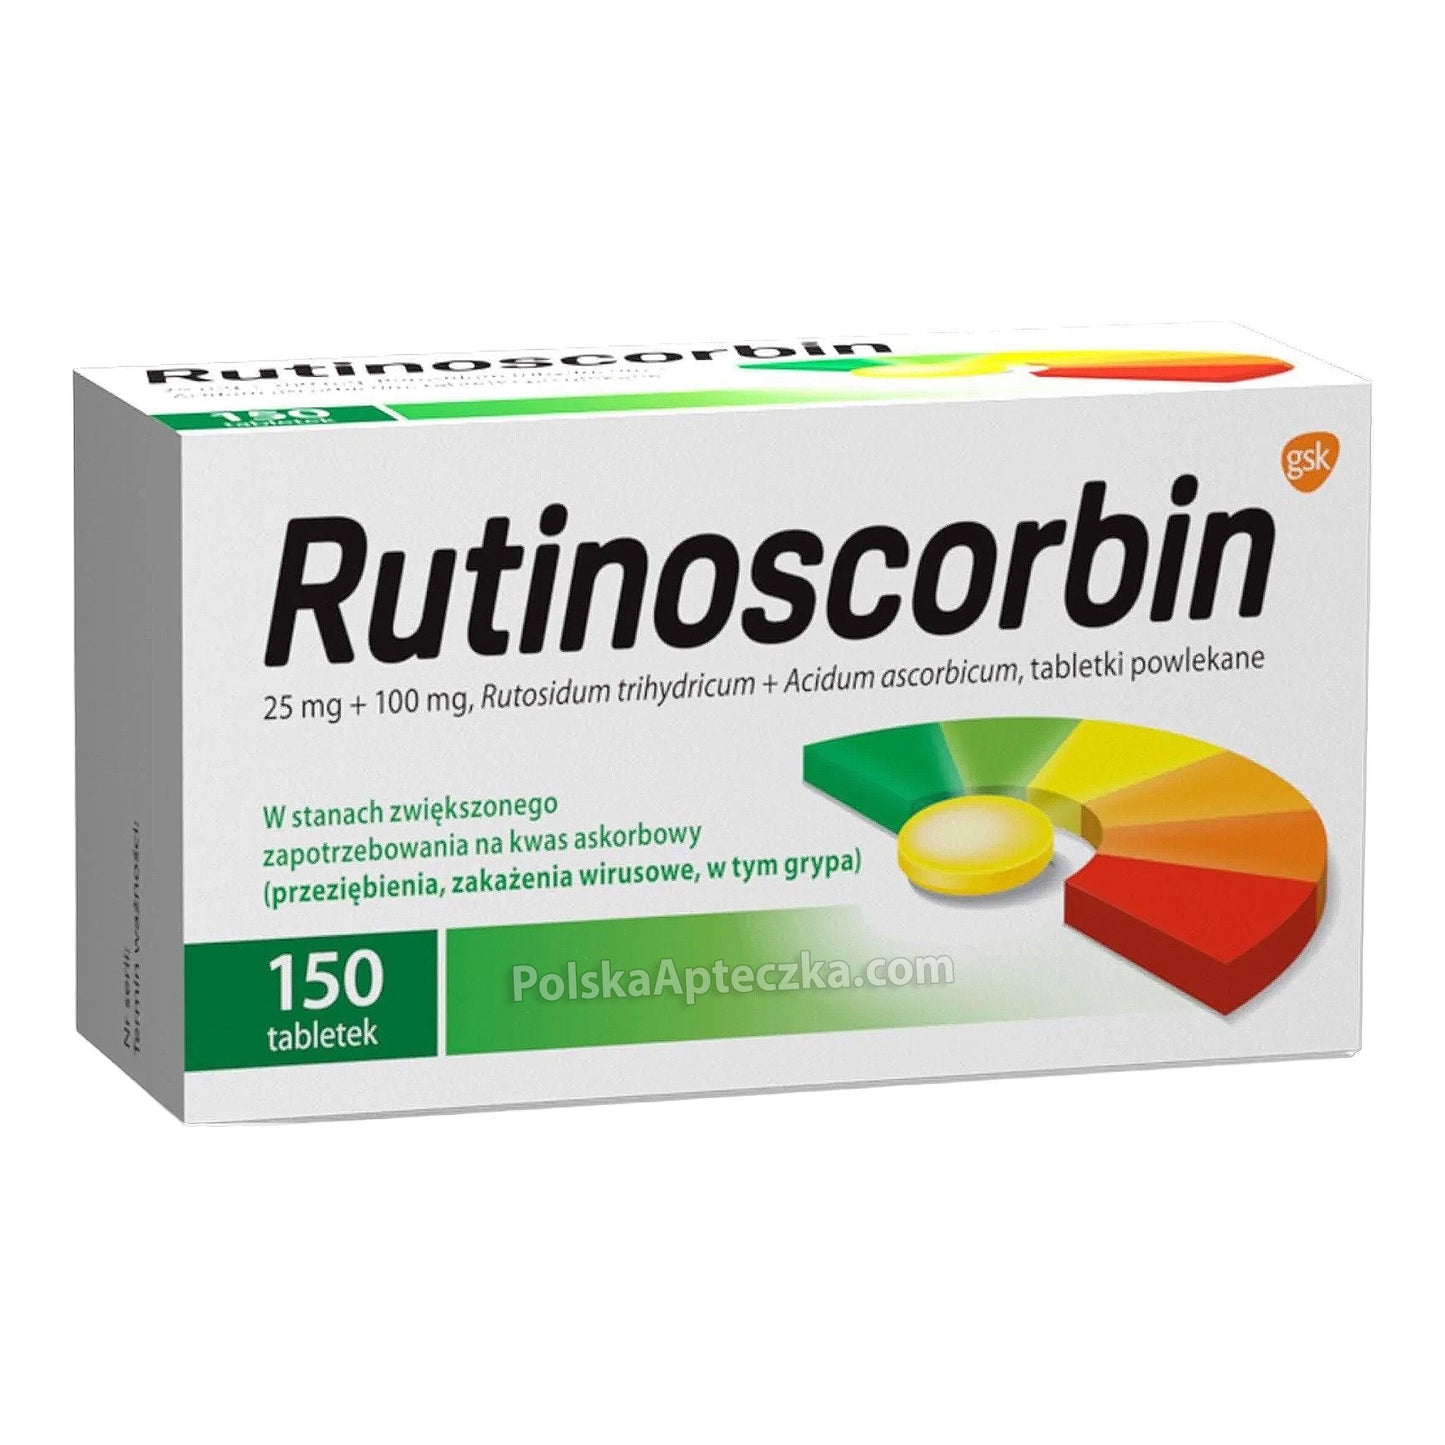 rutinoscorbin tablets